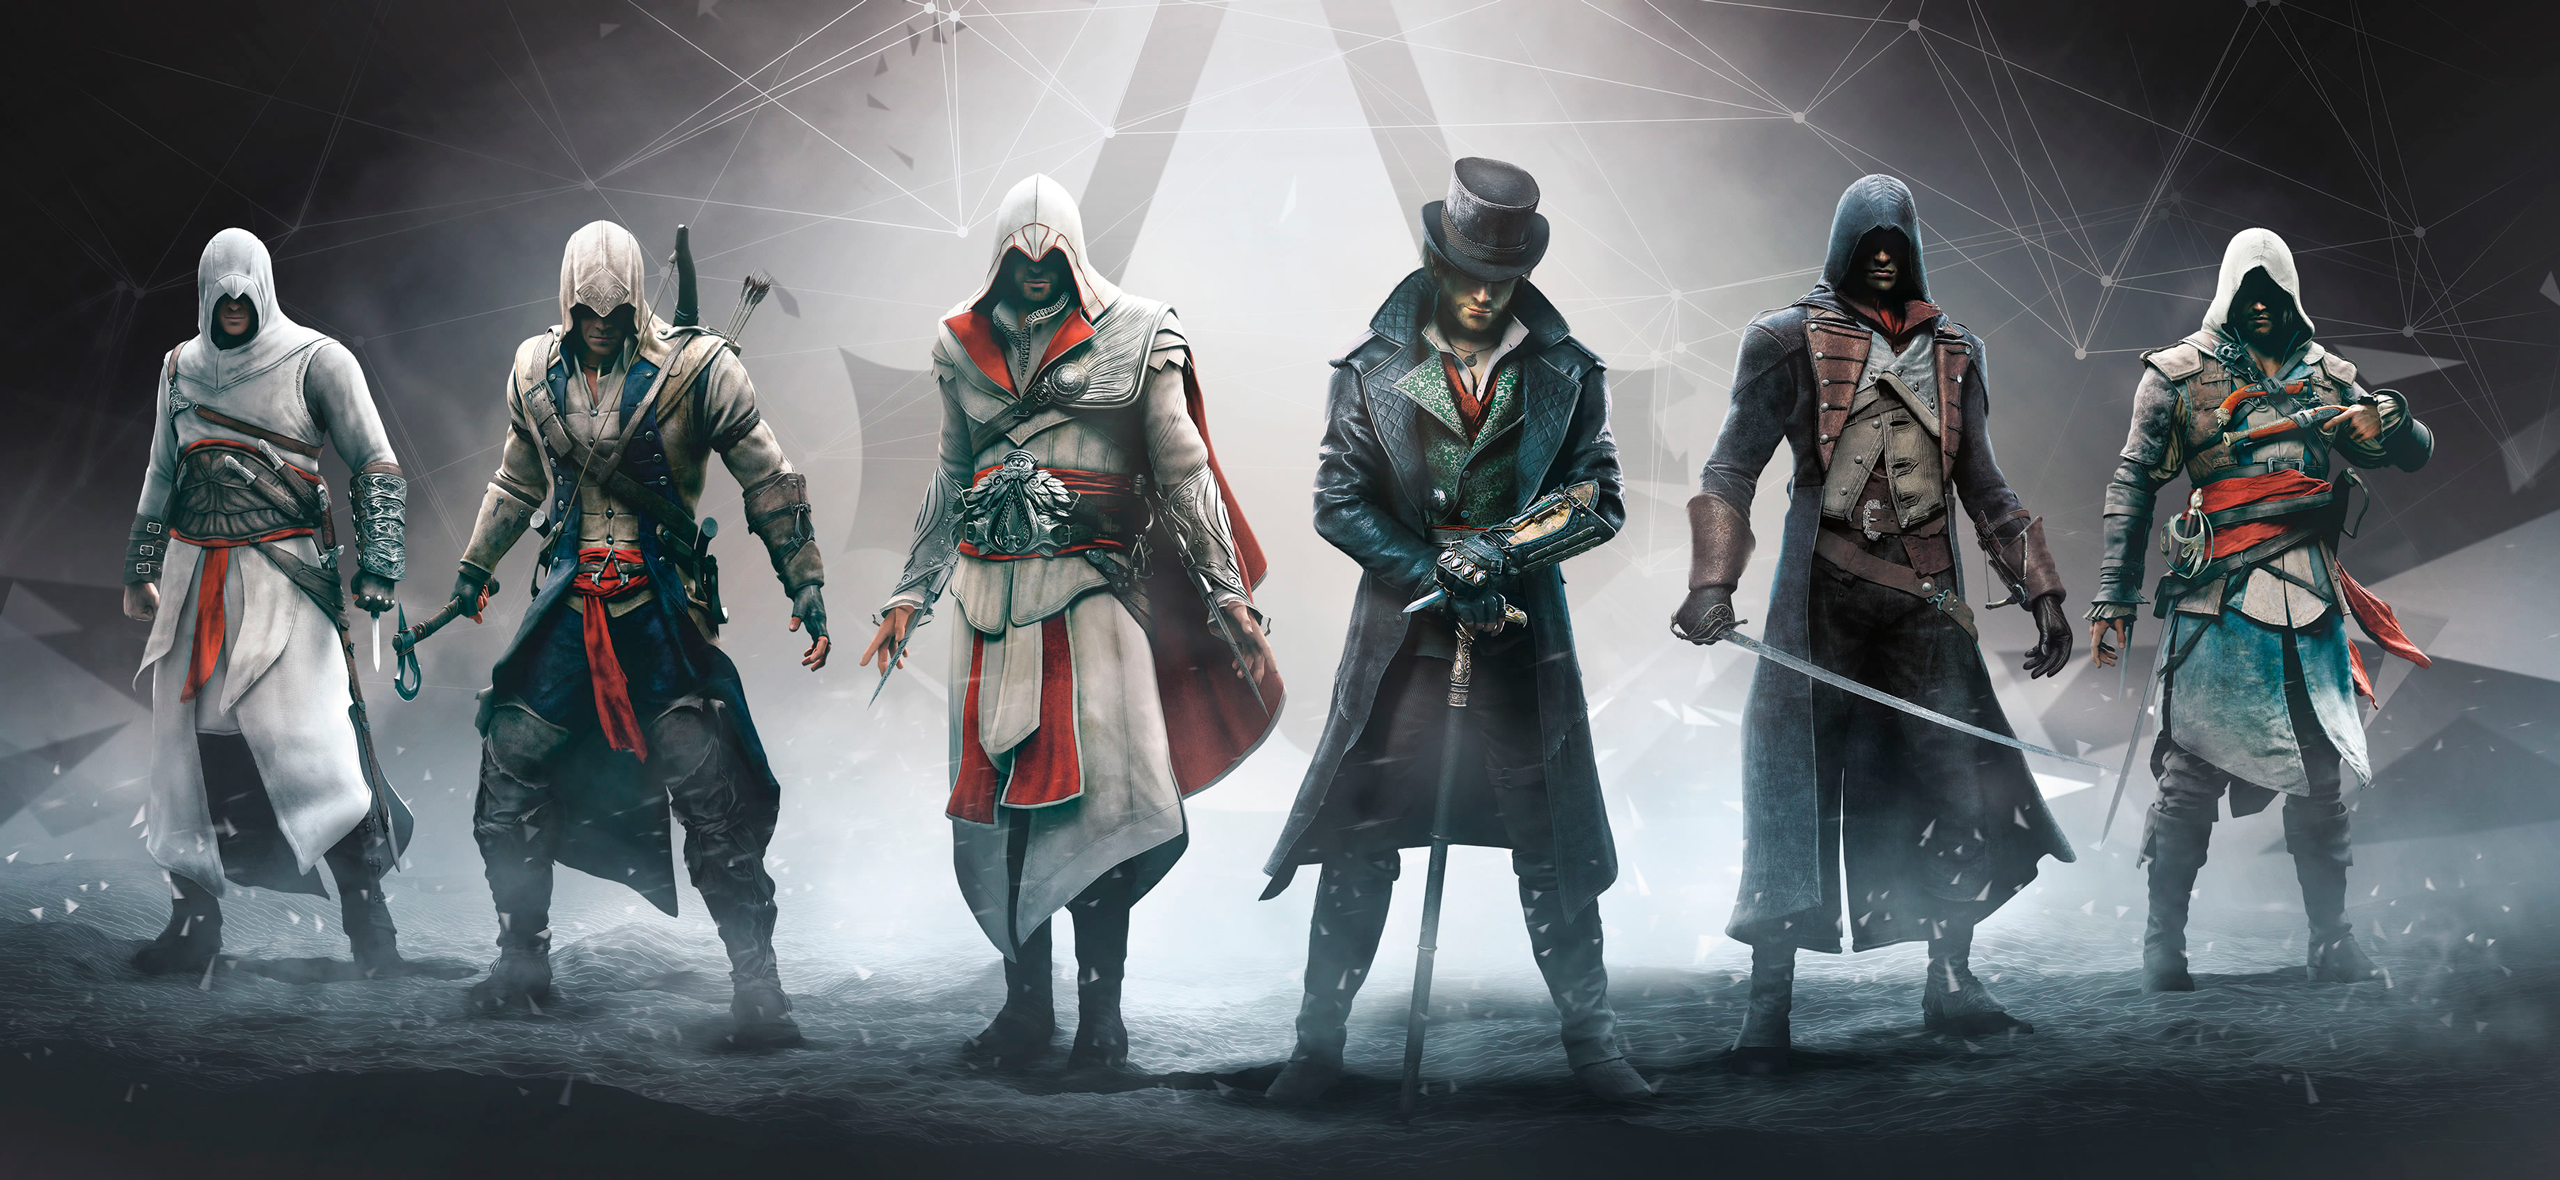 Assassin’s Creed: что известно о Hexe, ремейке Black Flag и других будущих играх серии